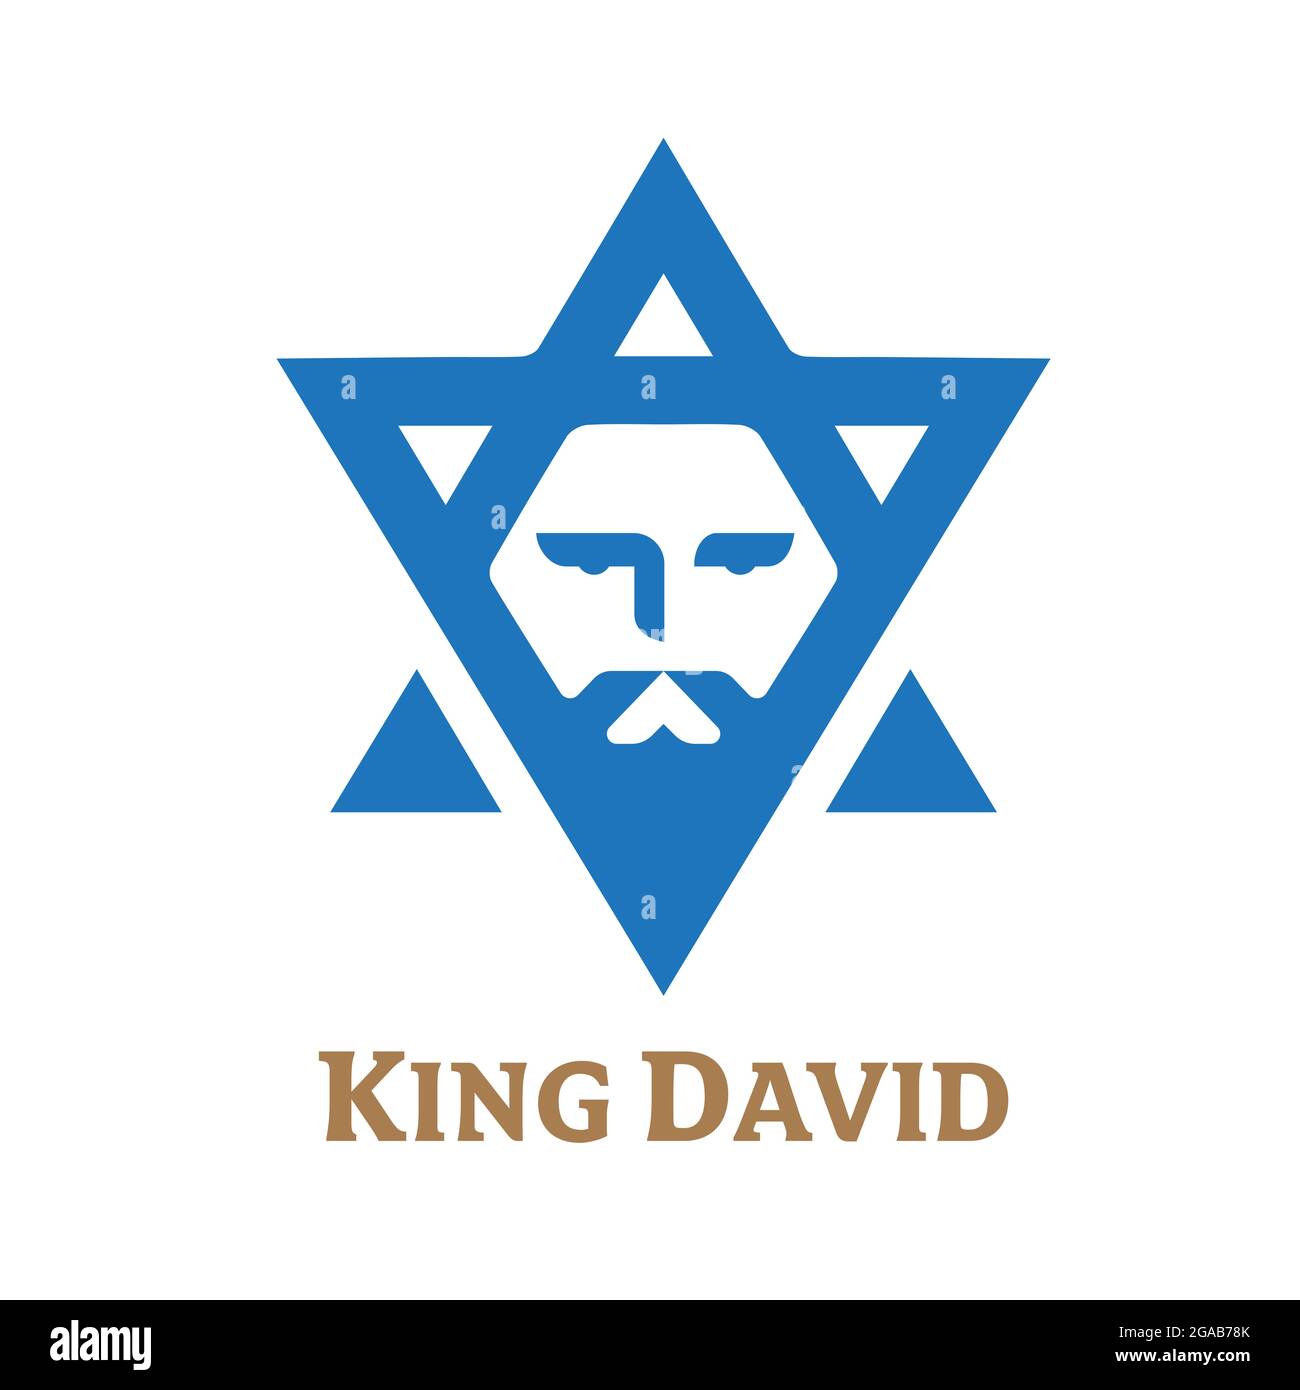 Die neuere Version des King David-Symbols mit verbesserten Linien Stock Vektor